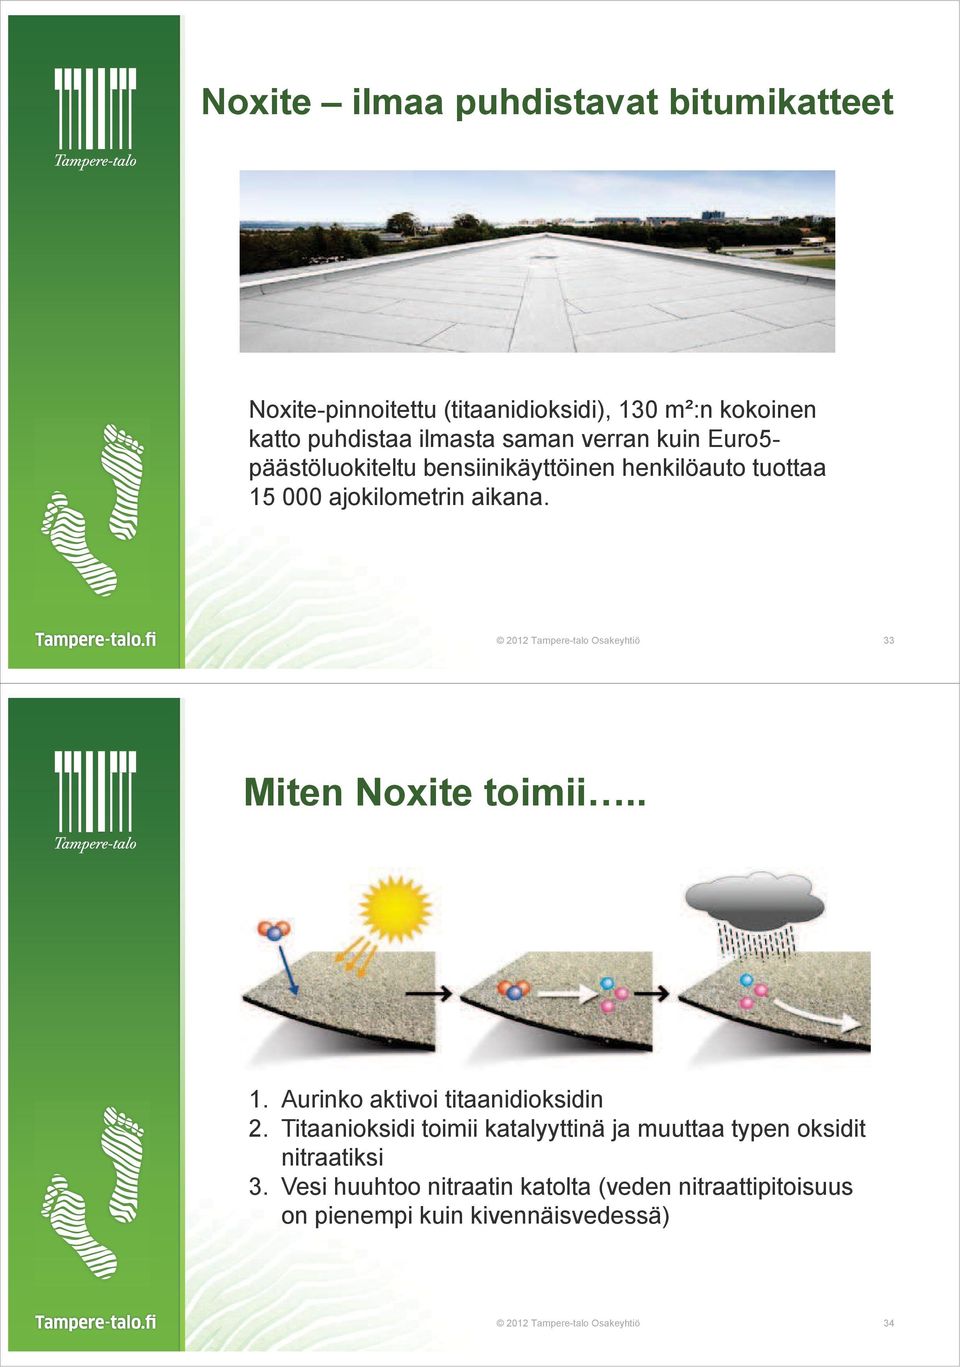 2012 Tampere-talo Osakeyhtiö 33 Miten Noxite toimii.. 1. Aurinko aktivoi titaanidioksidin 2.